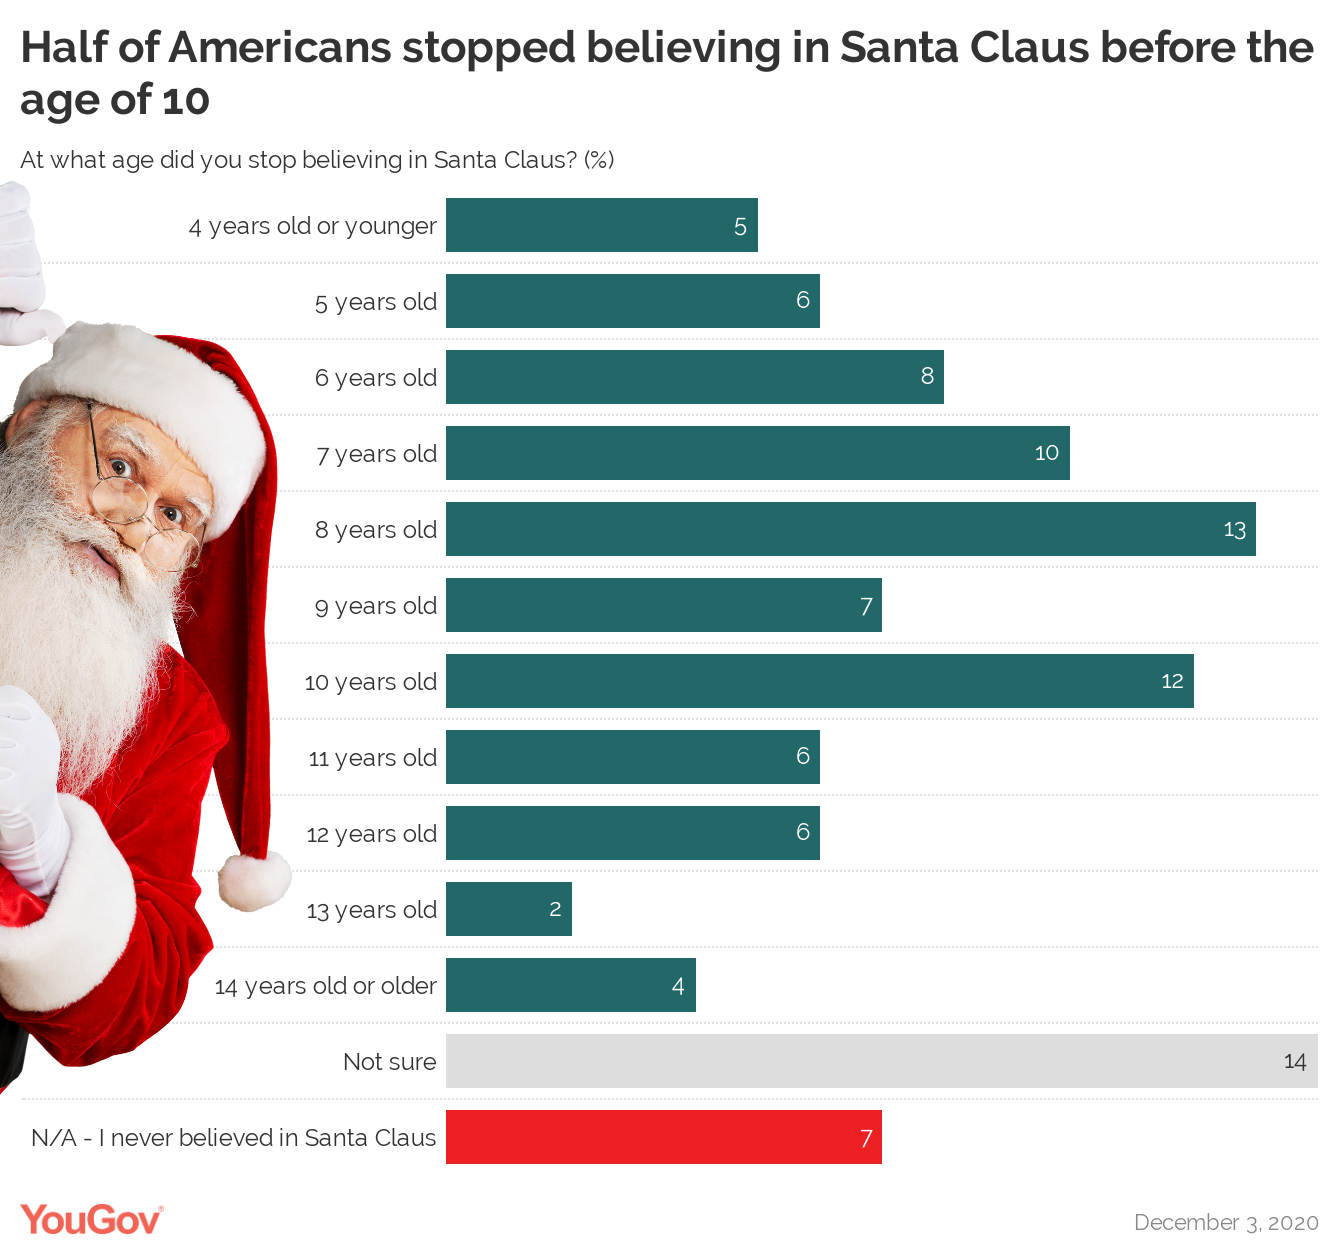 Should an 11 year old still believe in Santa?